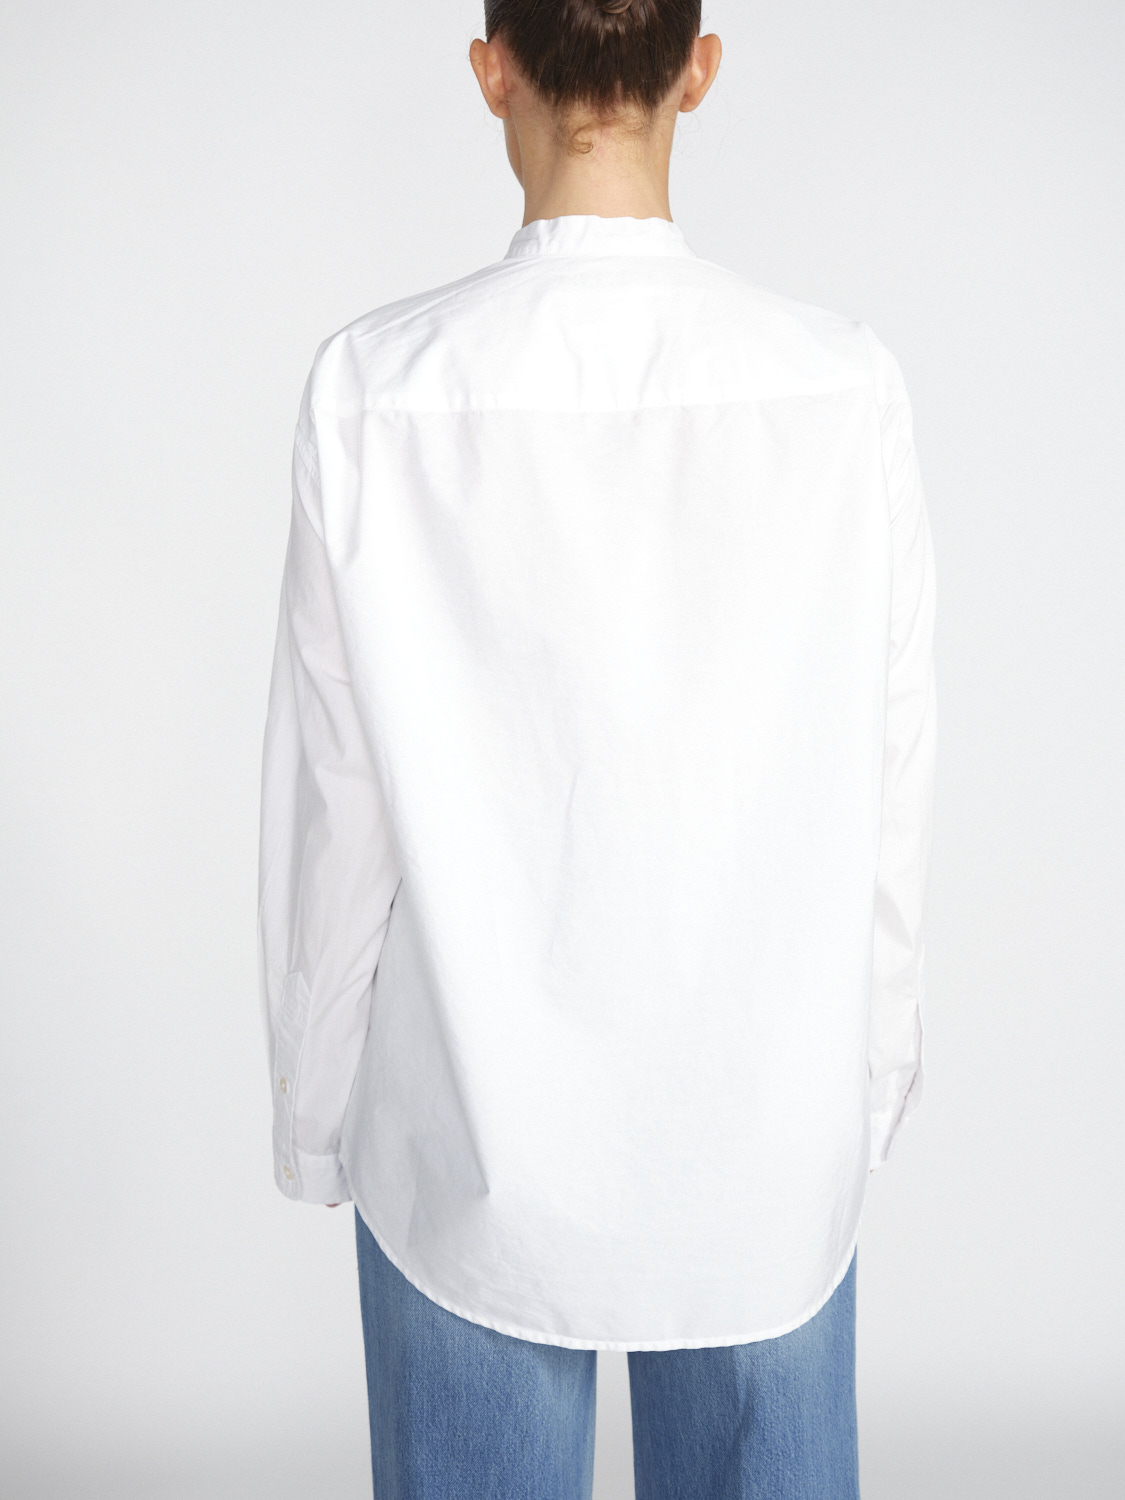 R13 Seamless - Oversized Bluse mit Montagegürtel-Details  weiß S